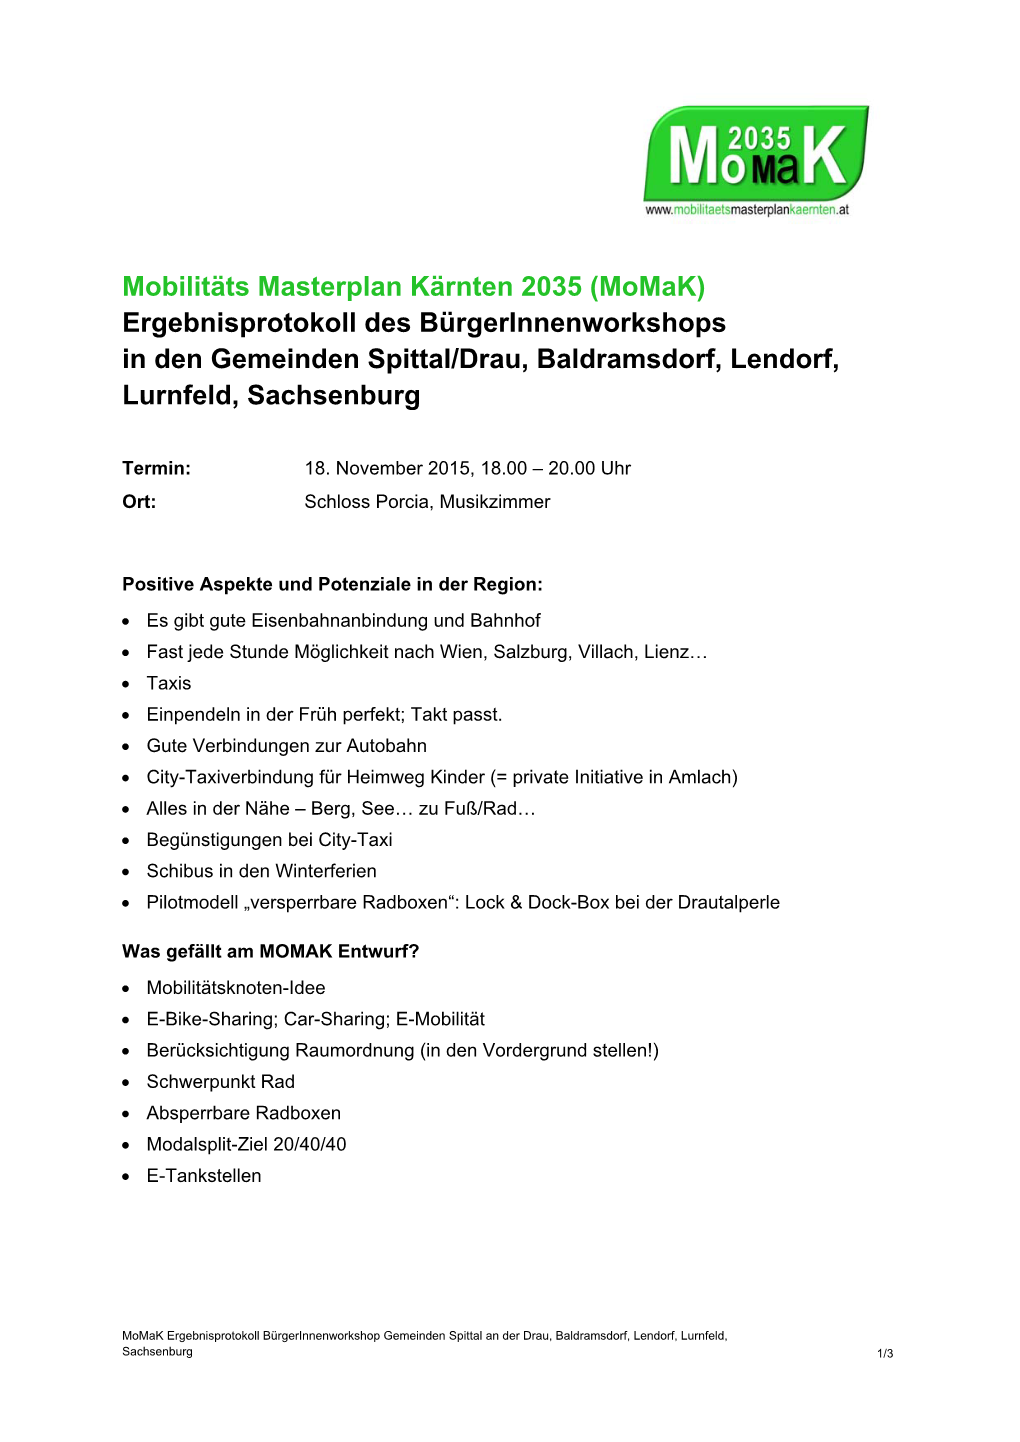 Mobilitäts Masterplan Kärnten 2035 (Momak) Ergebnisprotokoll Des Bürgerinnenworkshops in Den Gemeinden Spittal/Drau, Baldramsdorf, Lendorf, Lurnfeld, Sachsenburg